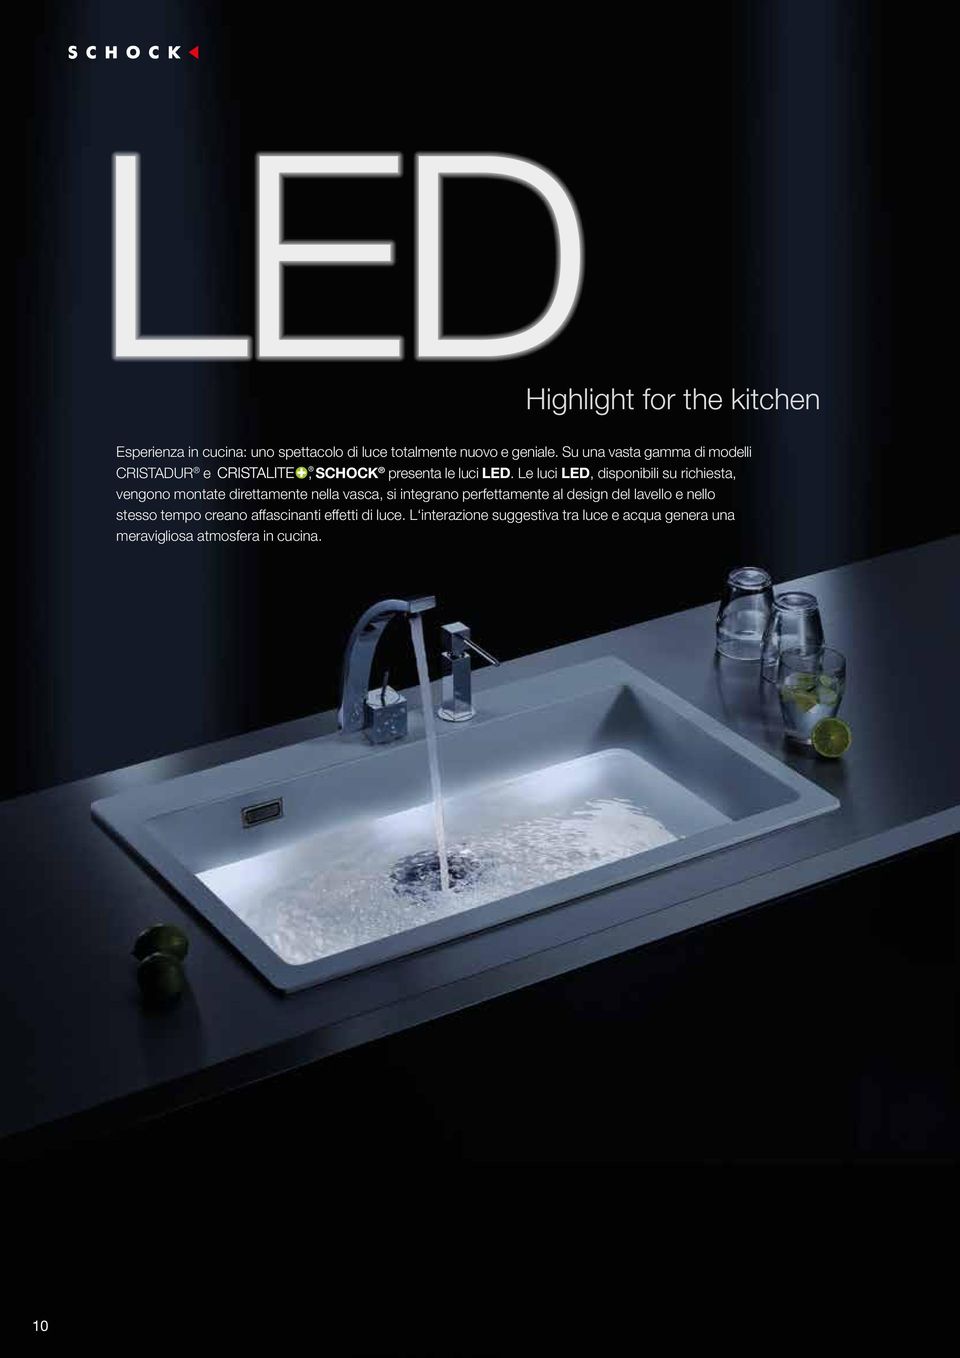 Le luci LED, disponibili su richiesta, vengono montate direttamente nella vasca, si integrano perfettamente al